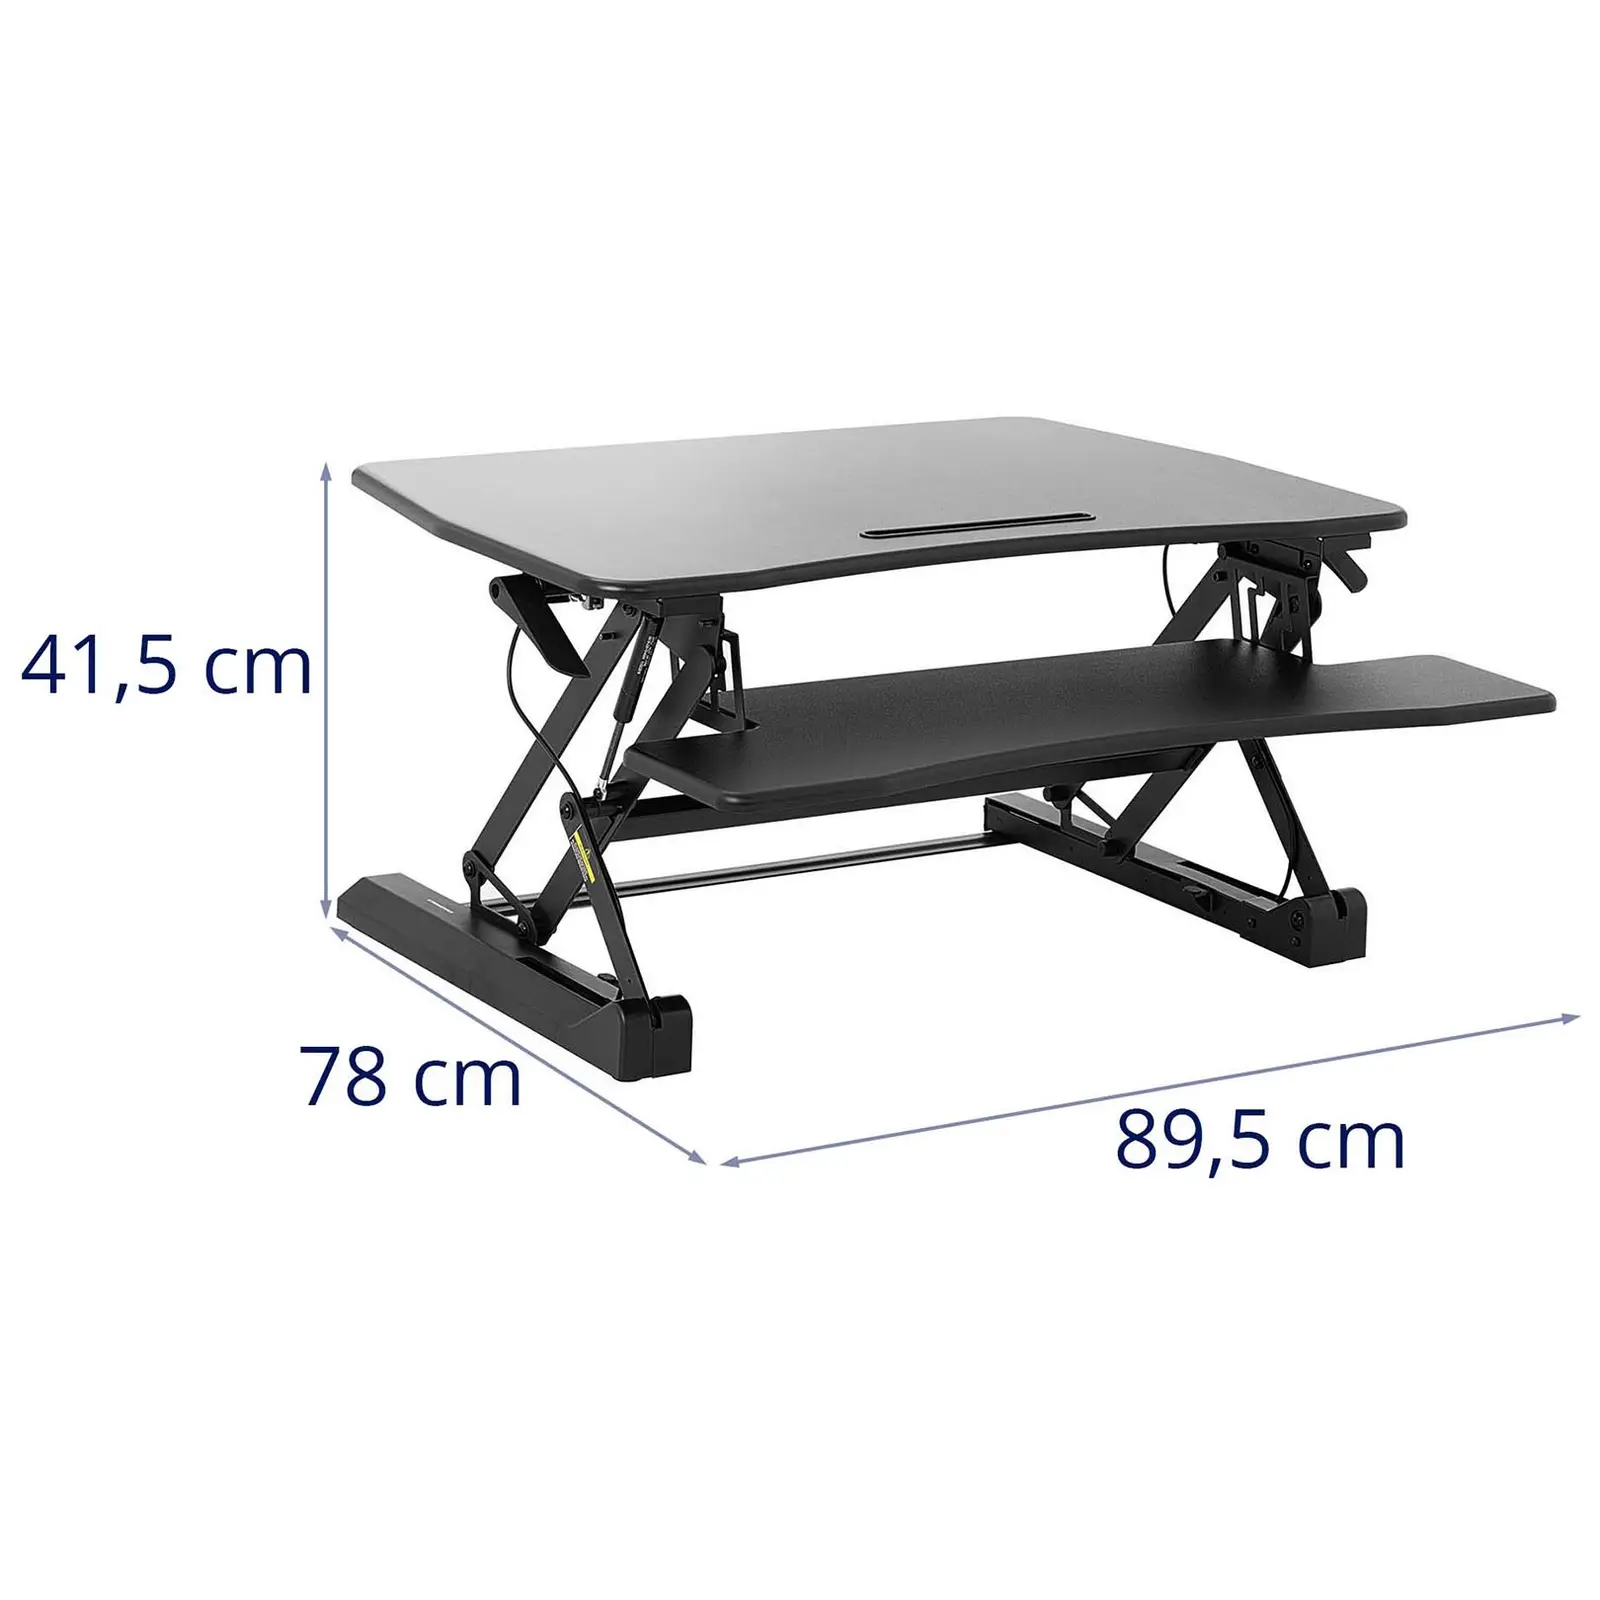 Íróasztal kiegészítő elem - fokozatmentesen állítható magasság - 16,5 - 41,5 cm